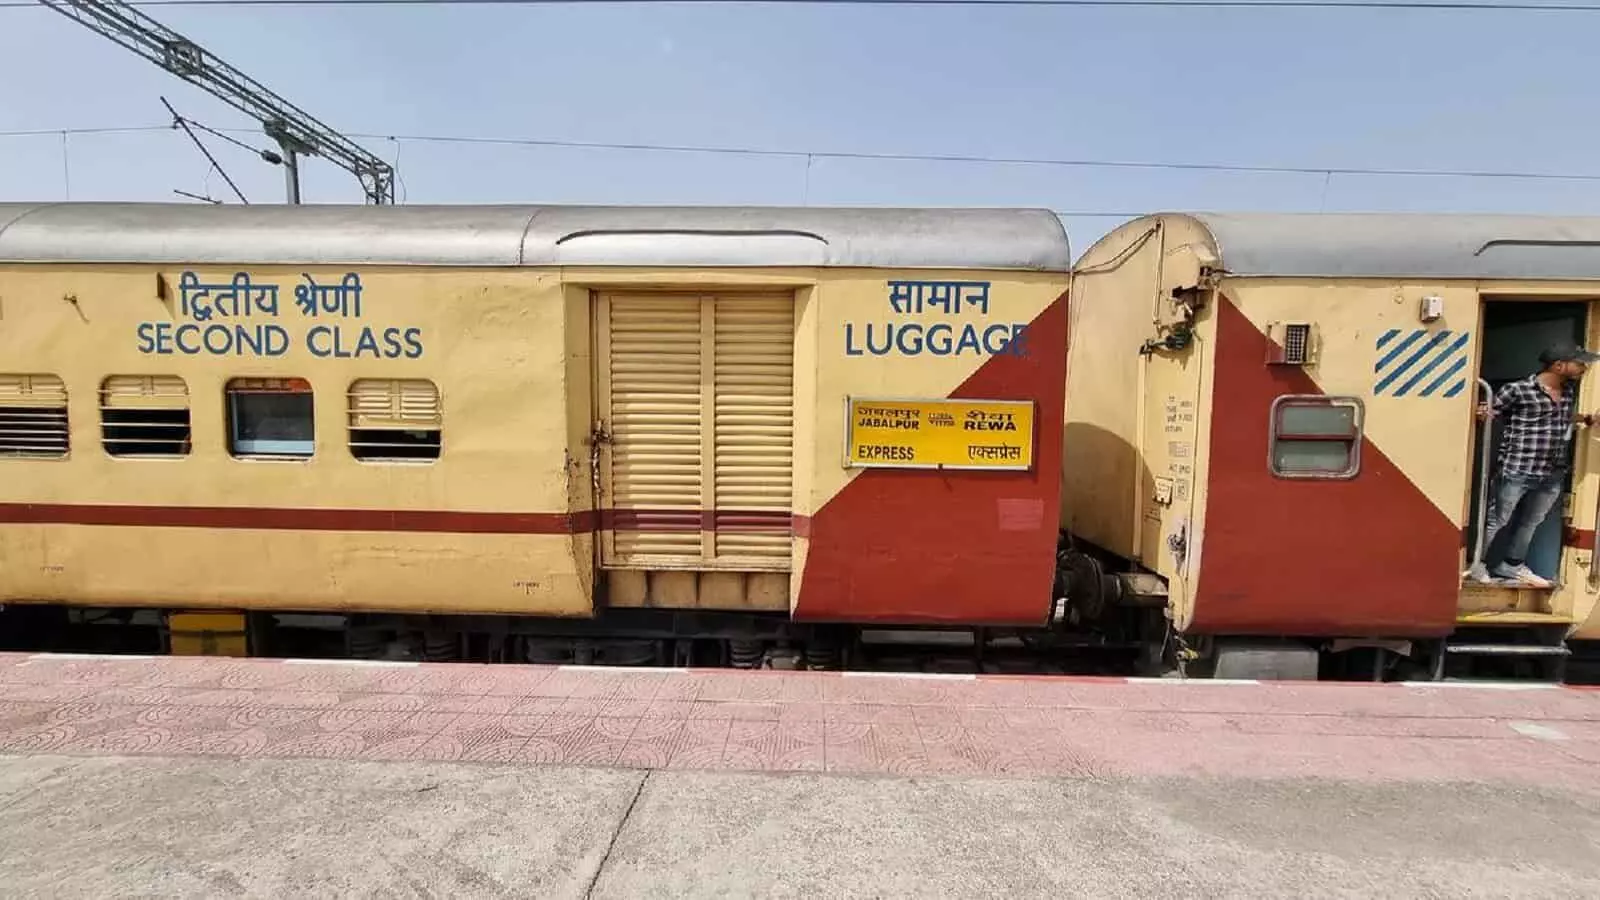 बड़ी खबर: जबलपुर-रीवा इंटरसिटी एक्सप्रेस ट्रेन का बदला टाइम टेबल, चेक करें क्या है UPDATE?